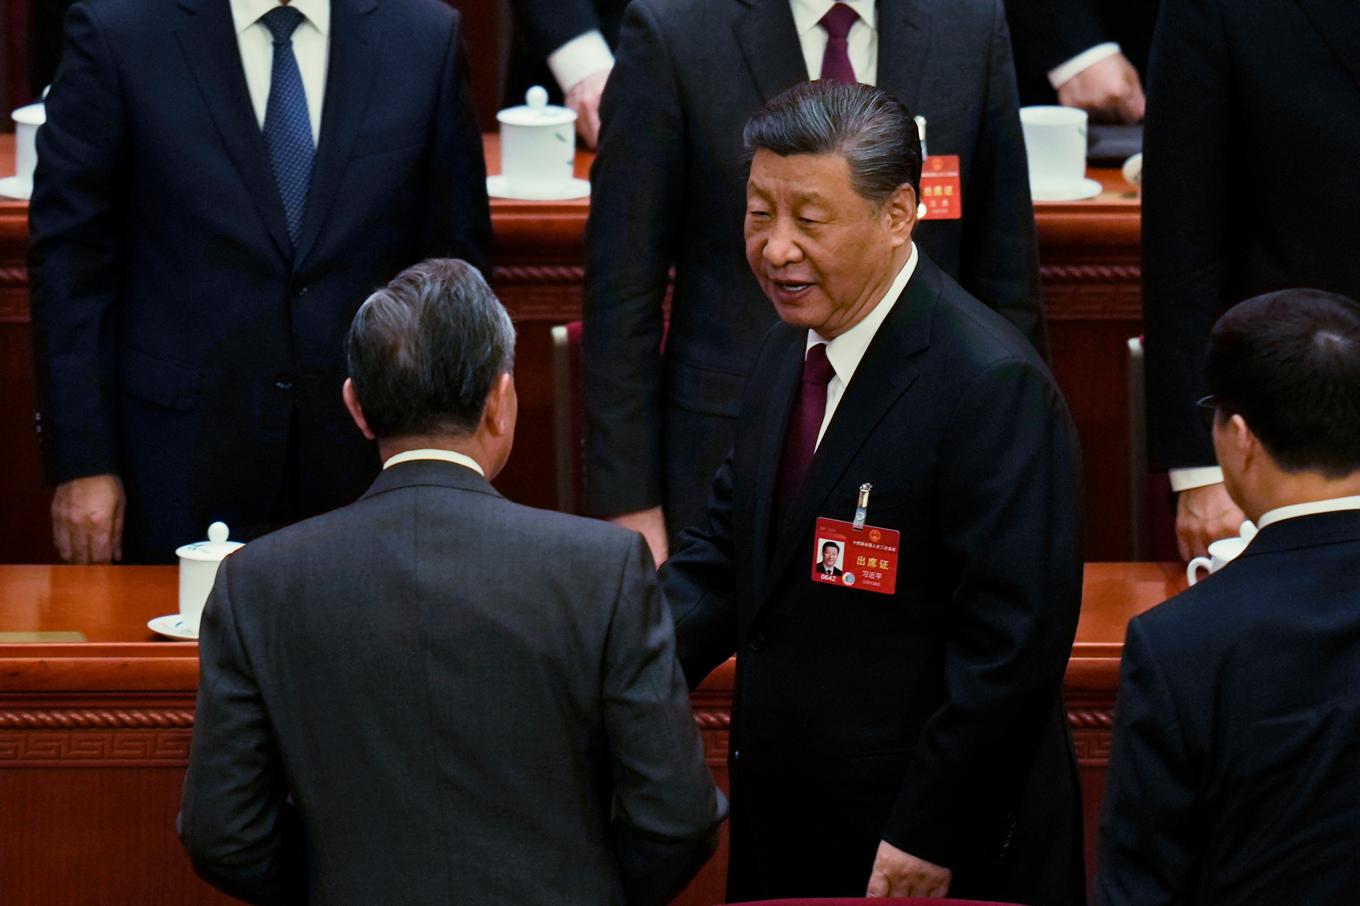 Politiskt toppmöte i Kina i veckan. Landets president Xi Jinping står inför flera utmaningar. Foto: Ng Han Guan/AP/TT